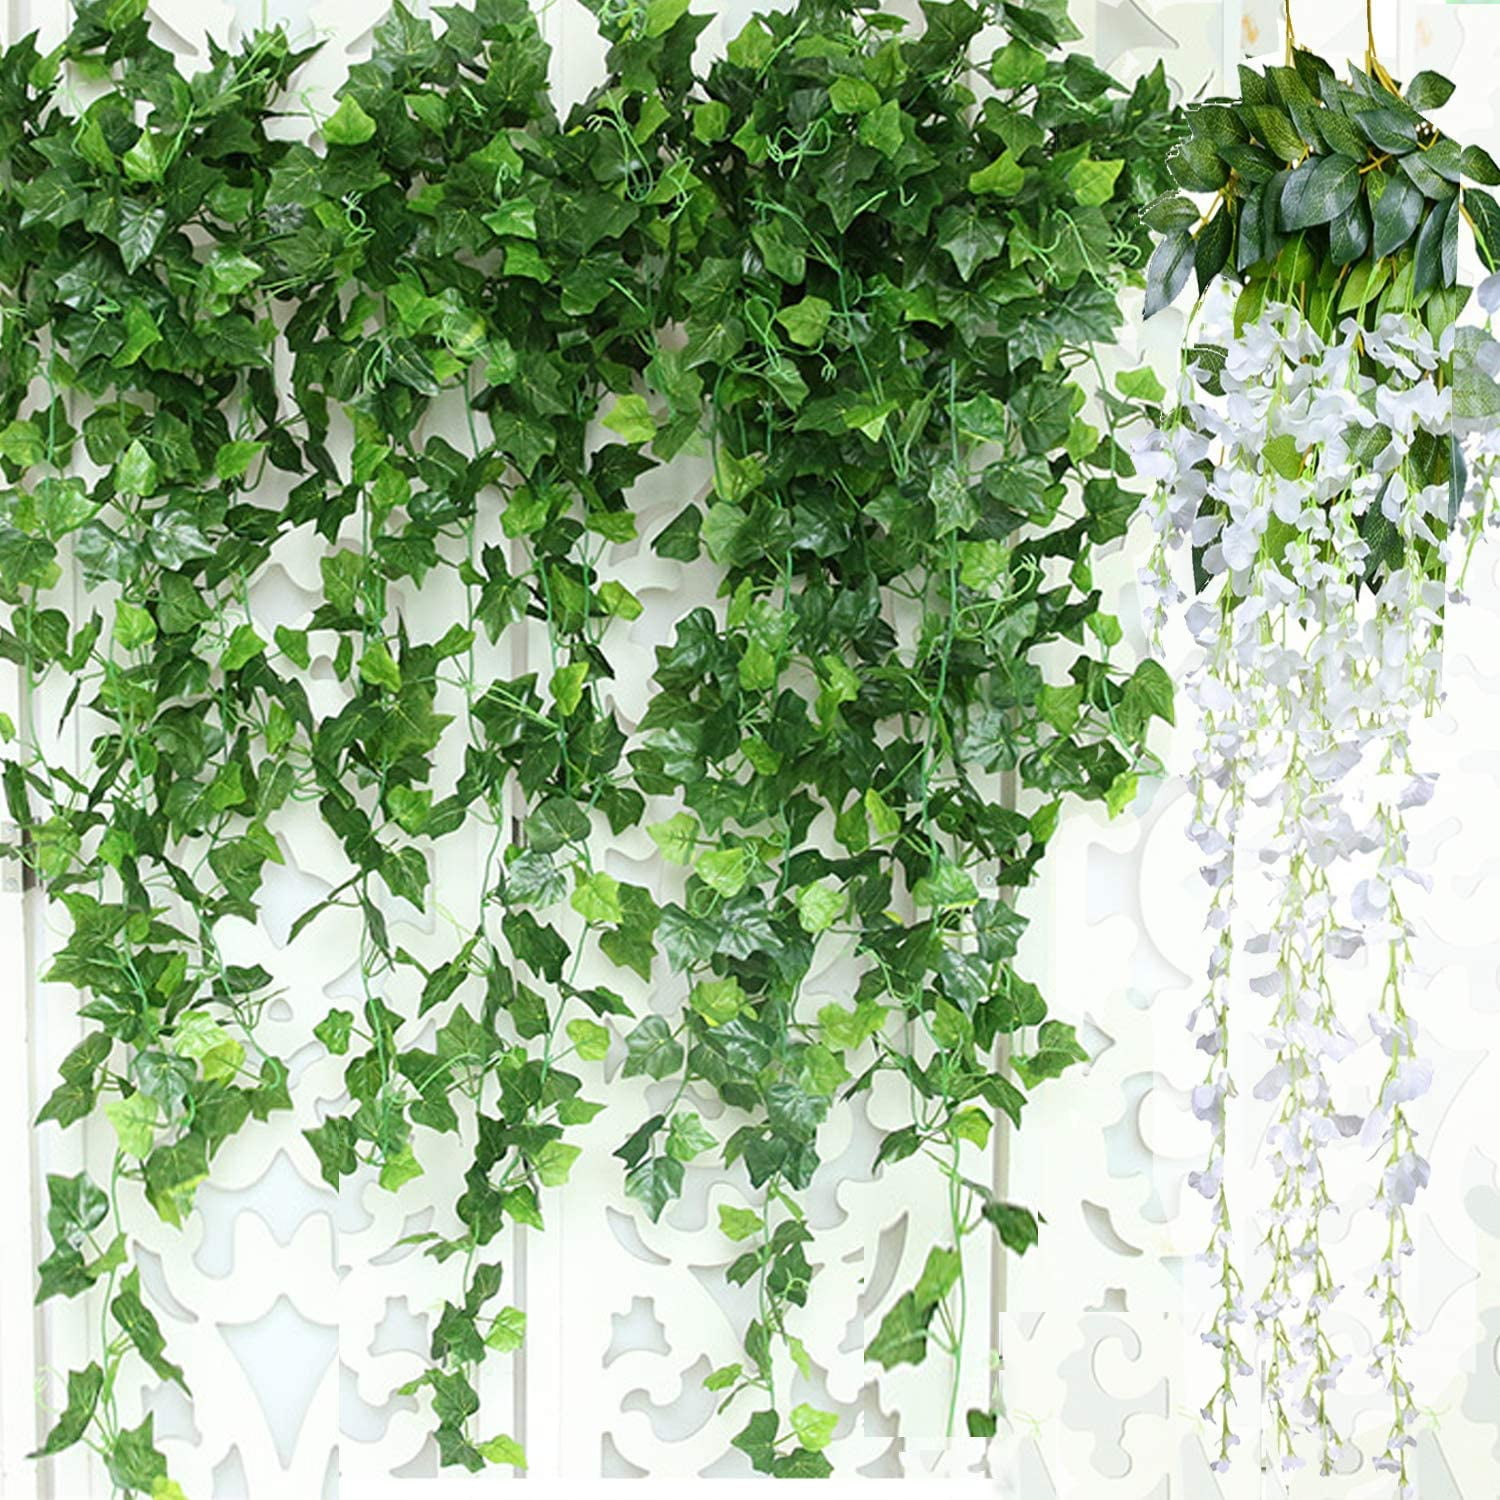 12Pack Hanging Ivy Vine Plant Silk Leaf Garland Leaves Home Wedding Garden Decor 